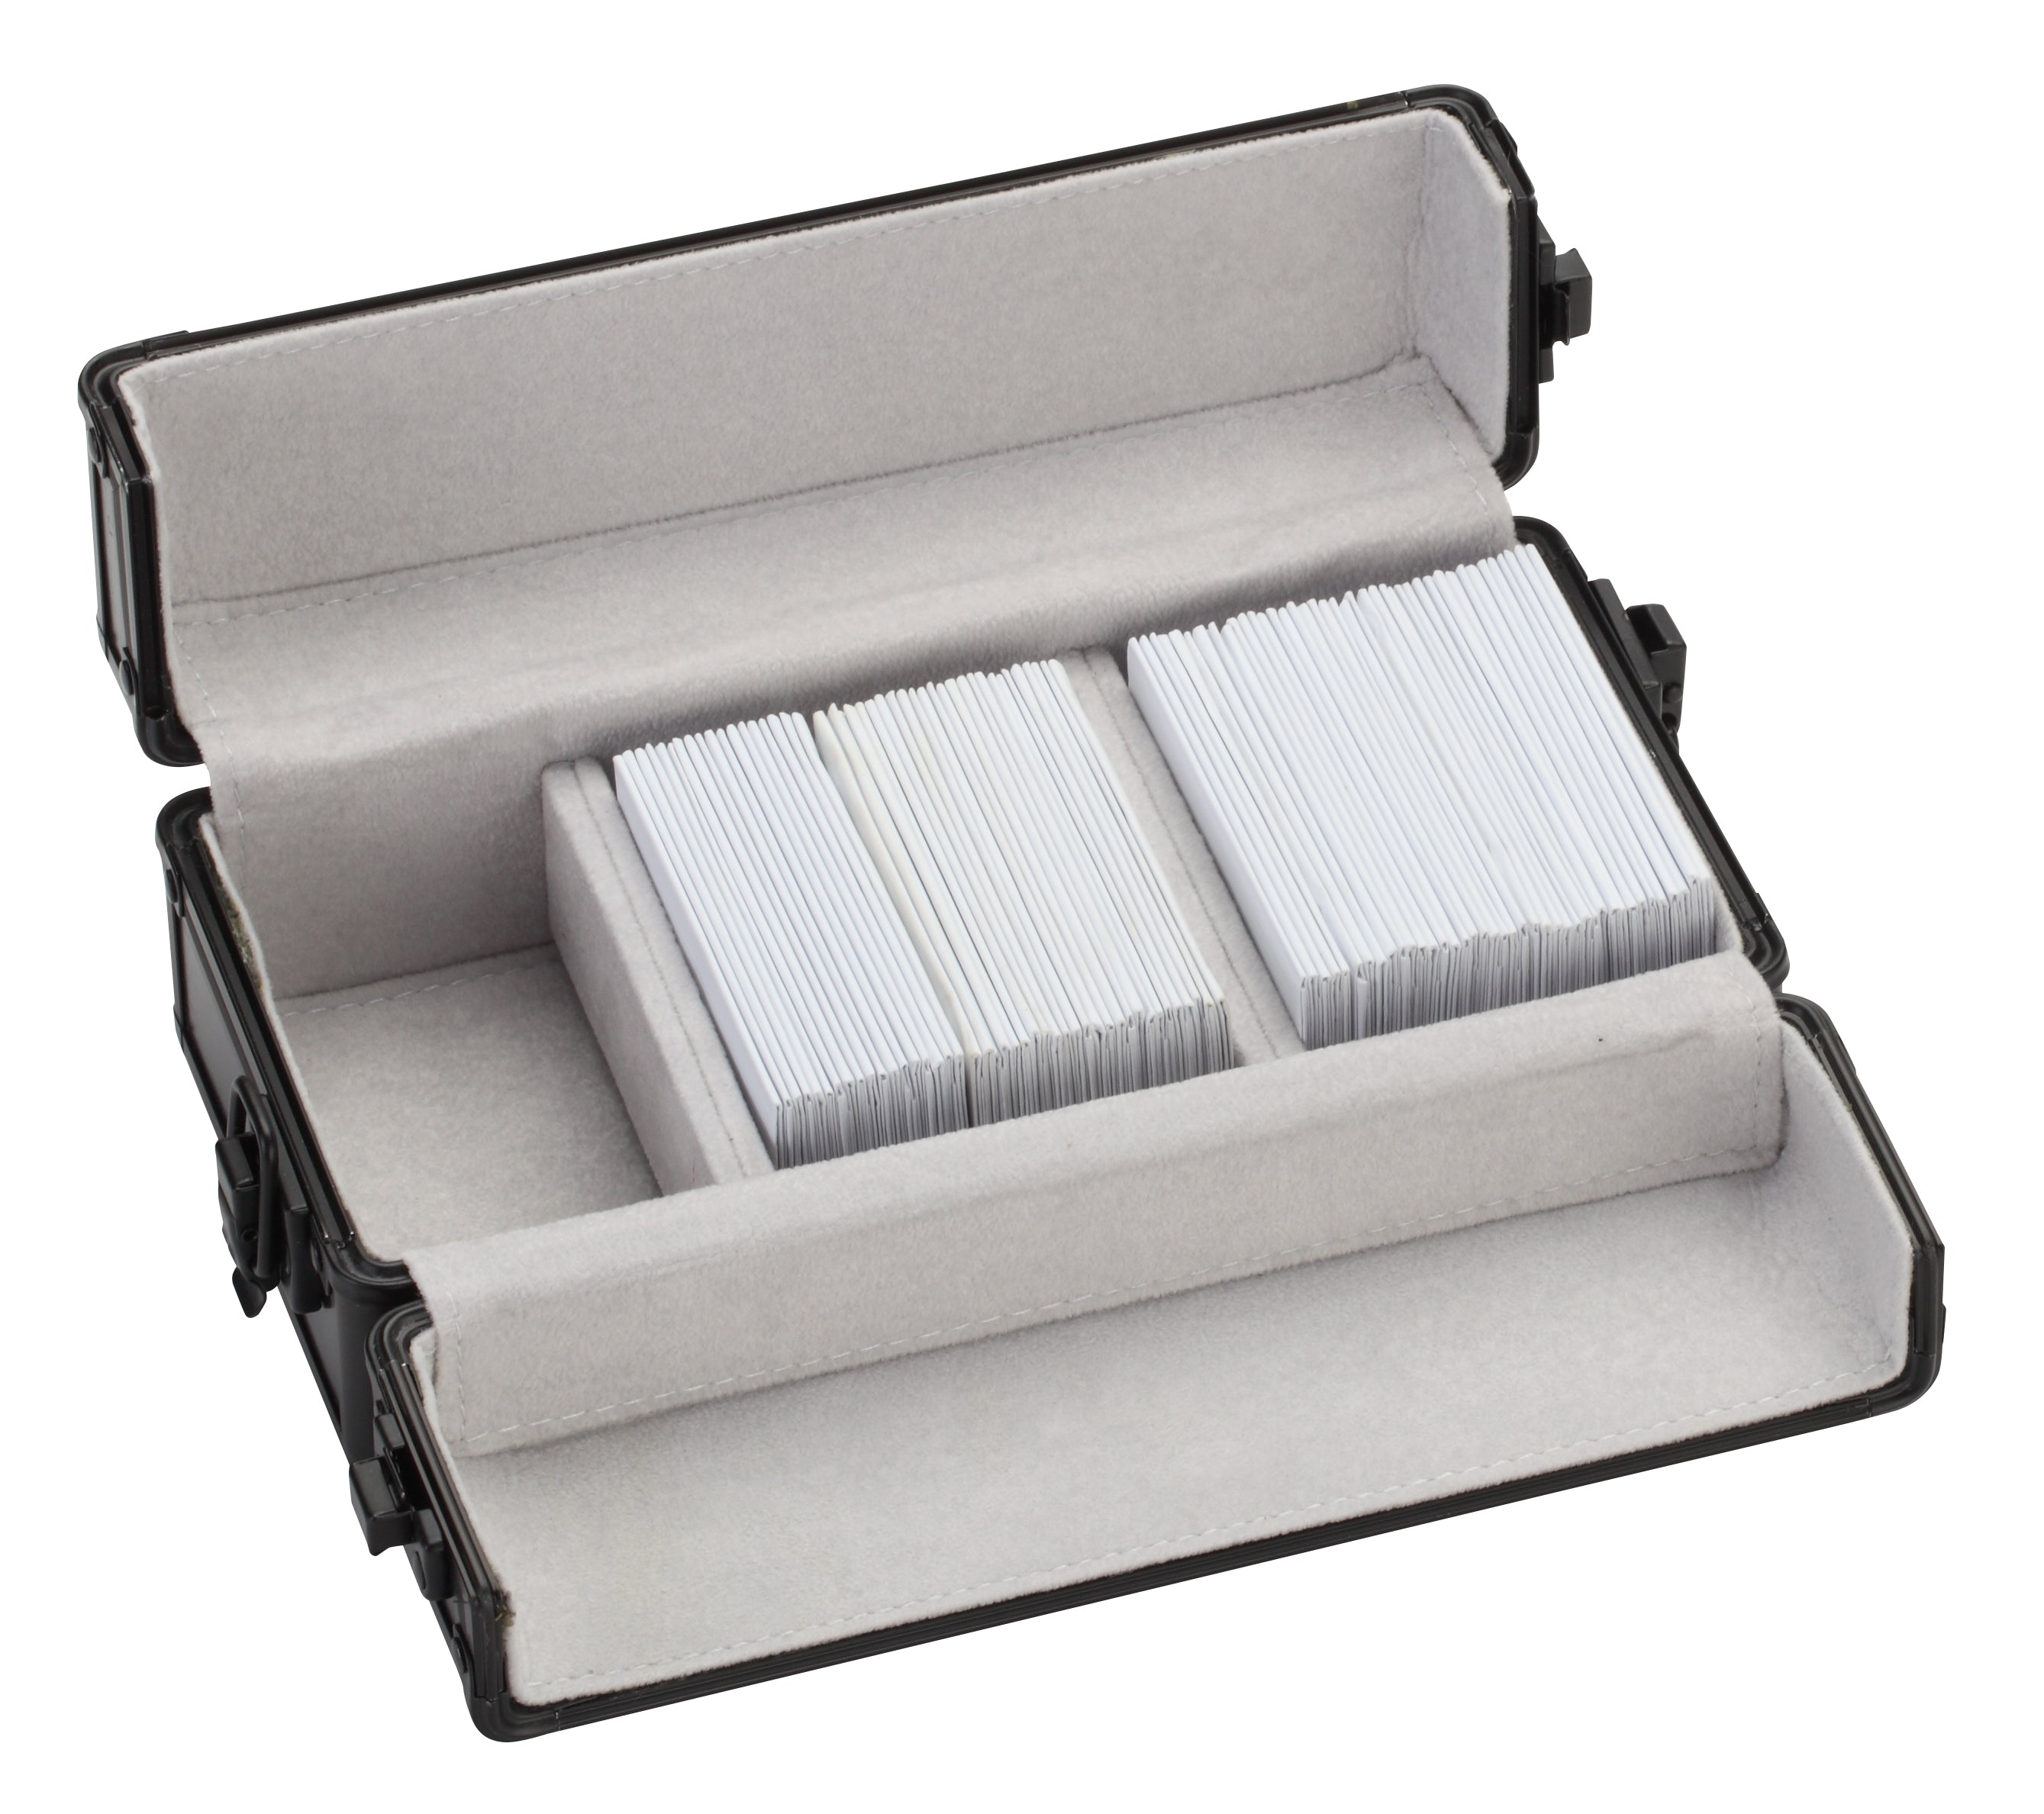 Premium Black Aluminum Parcel Parcel Boxes, 7" L x 4.25" W